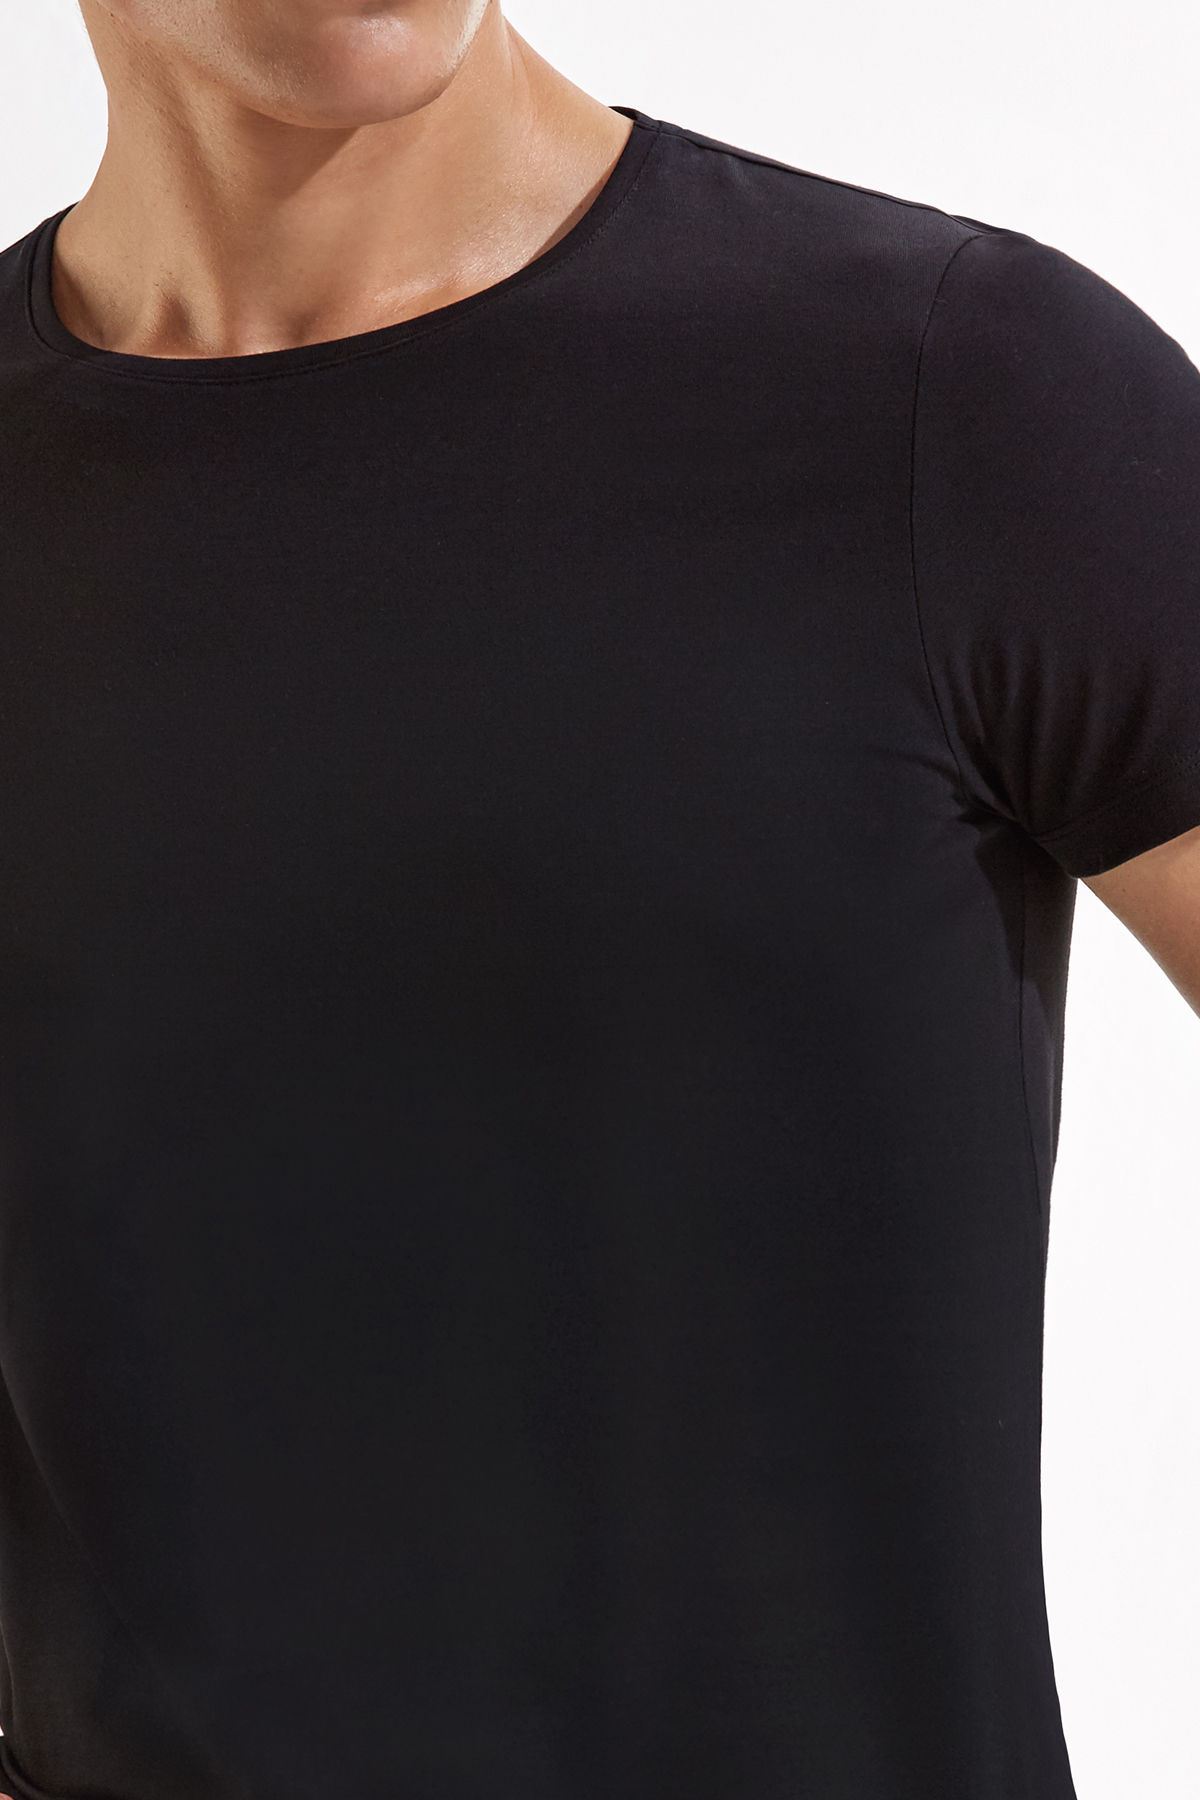 İkili Siyah İç Giyim T-Shirt Seti